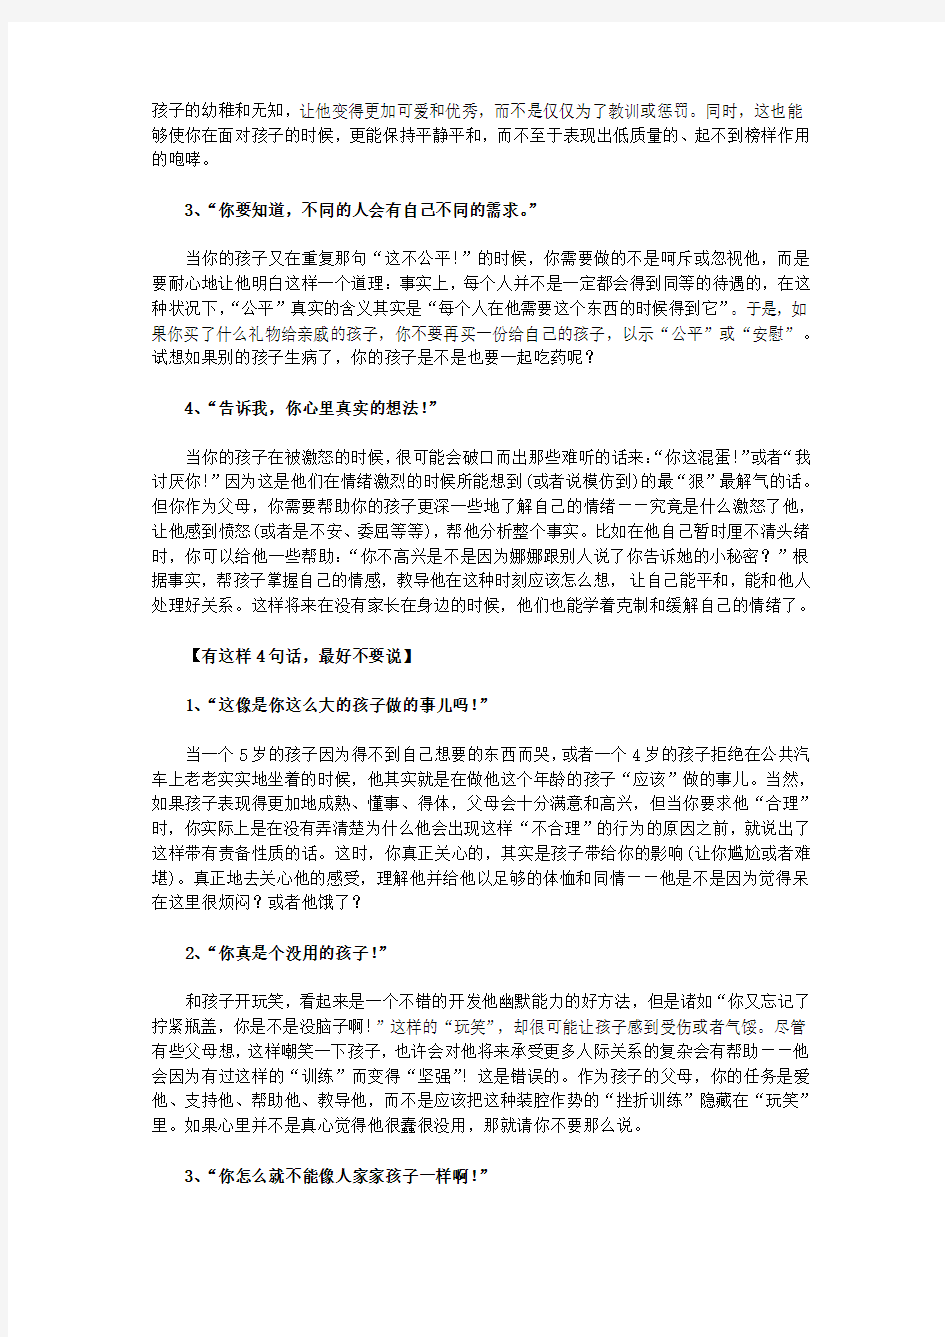 山东省网上家长学校(廖)：教育孩子时那些该说和不该说的话